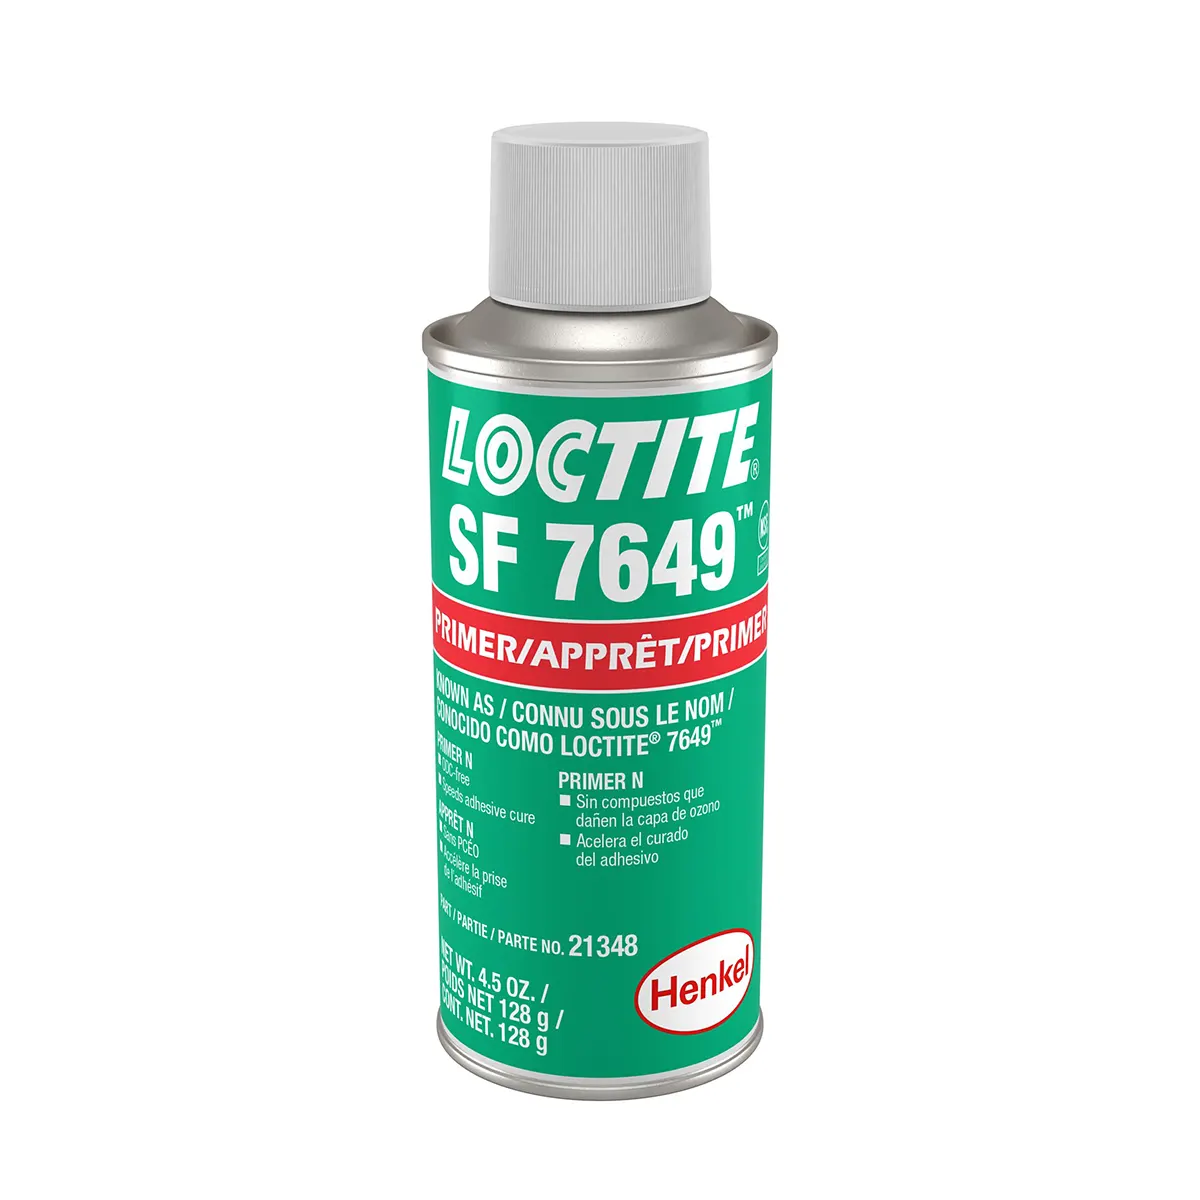 Loctite SF 7649 primer